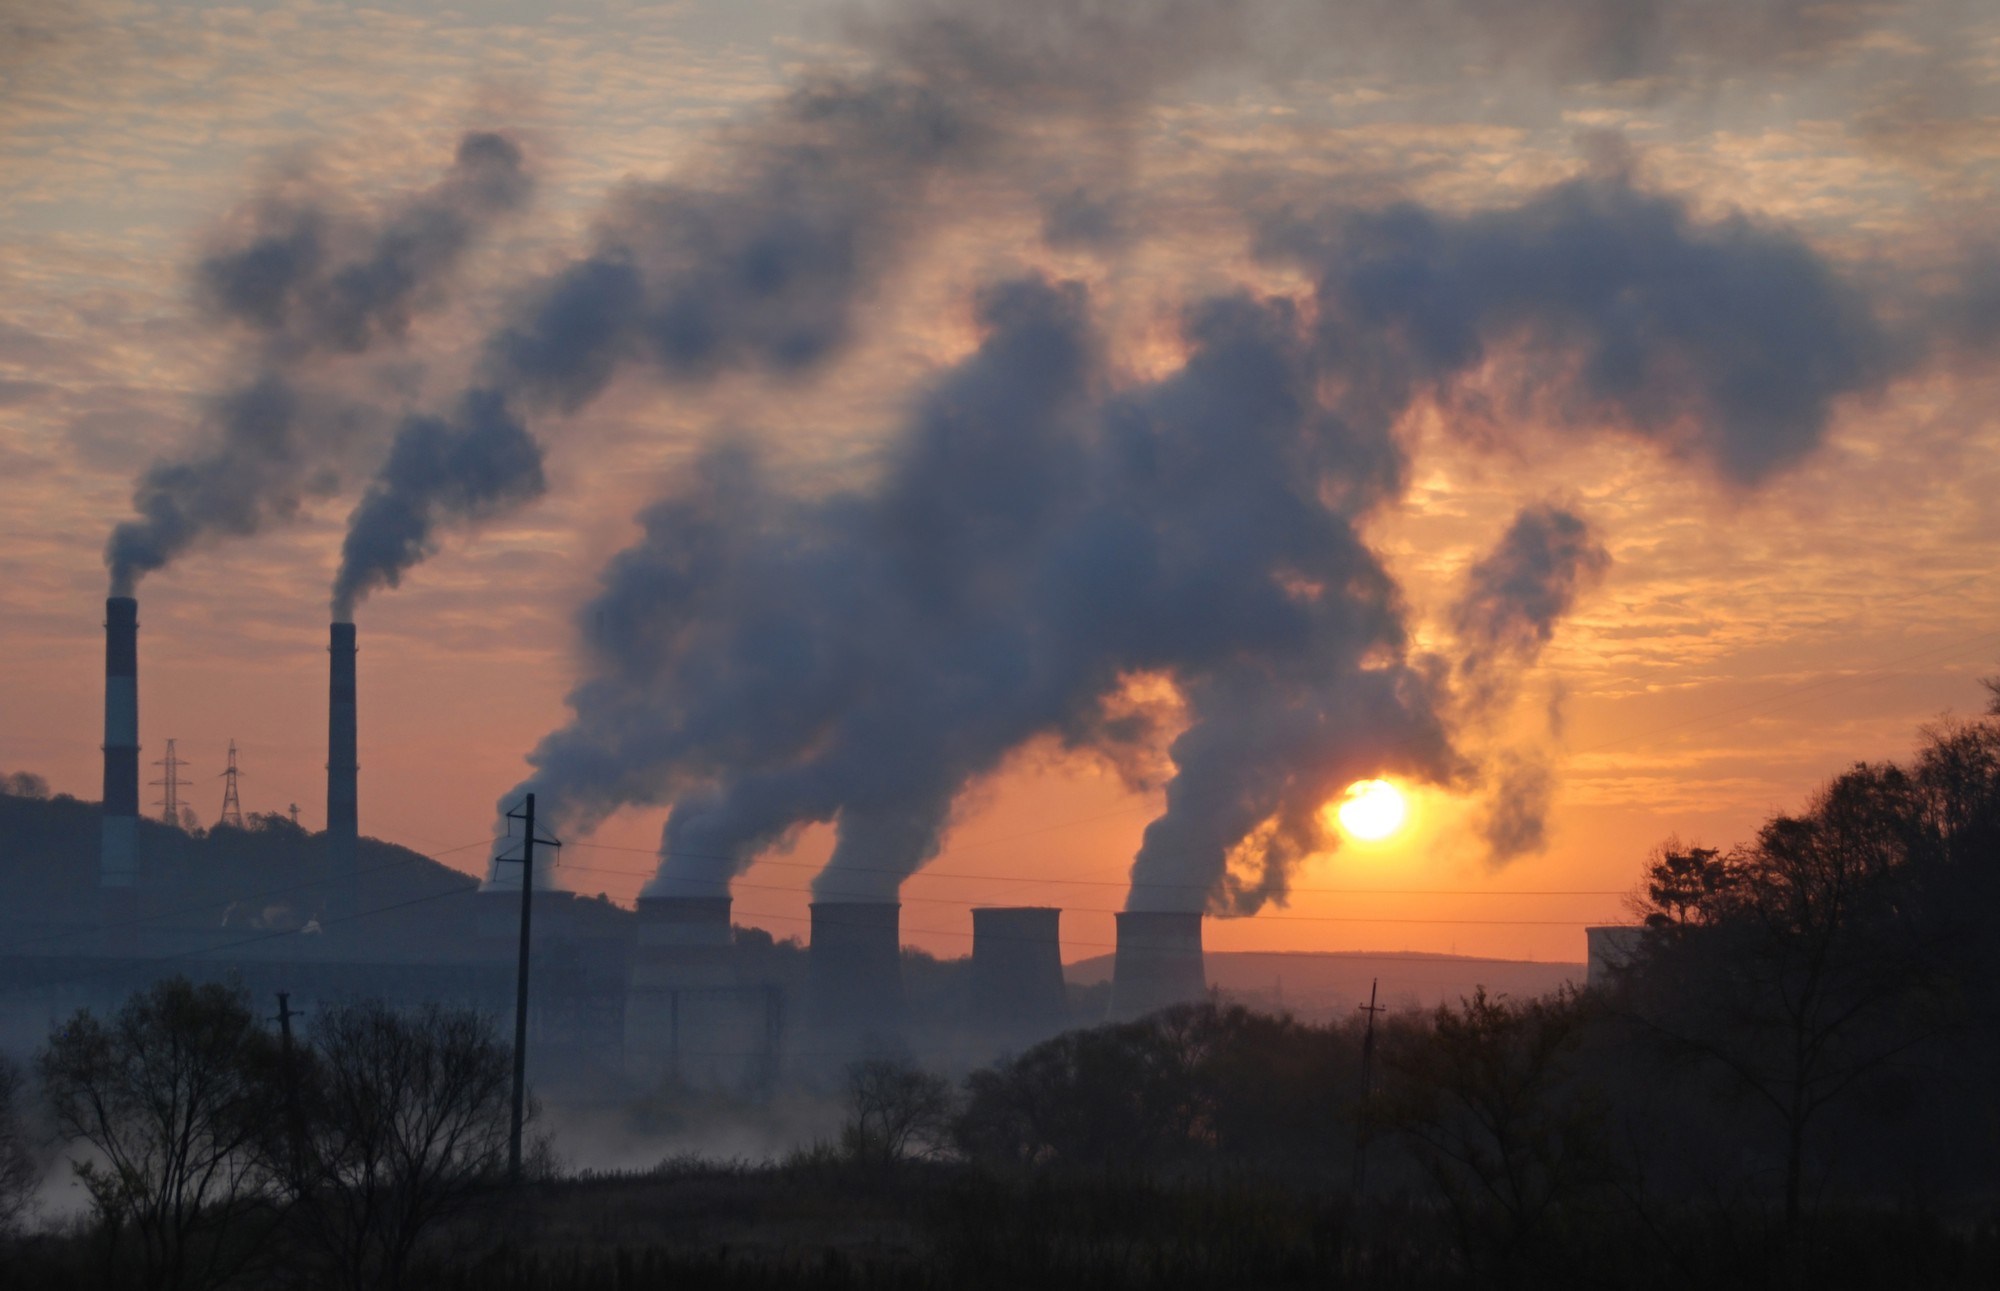 從燃燒中產生的PM2.5對人體有害。(圖片來源: http://dailyhudson.com/air-pollution-linked-to-1-in-8-deaths-worldwide)